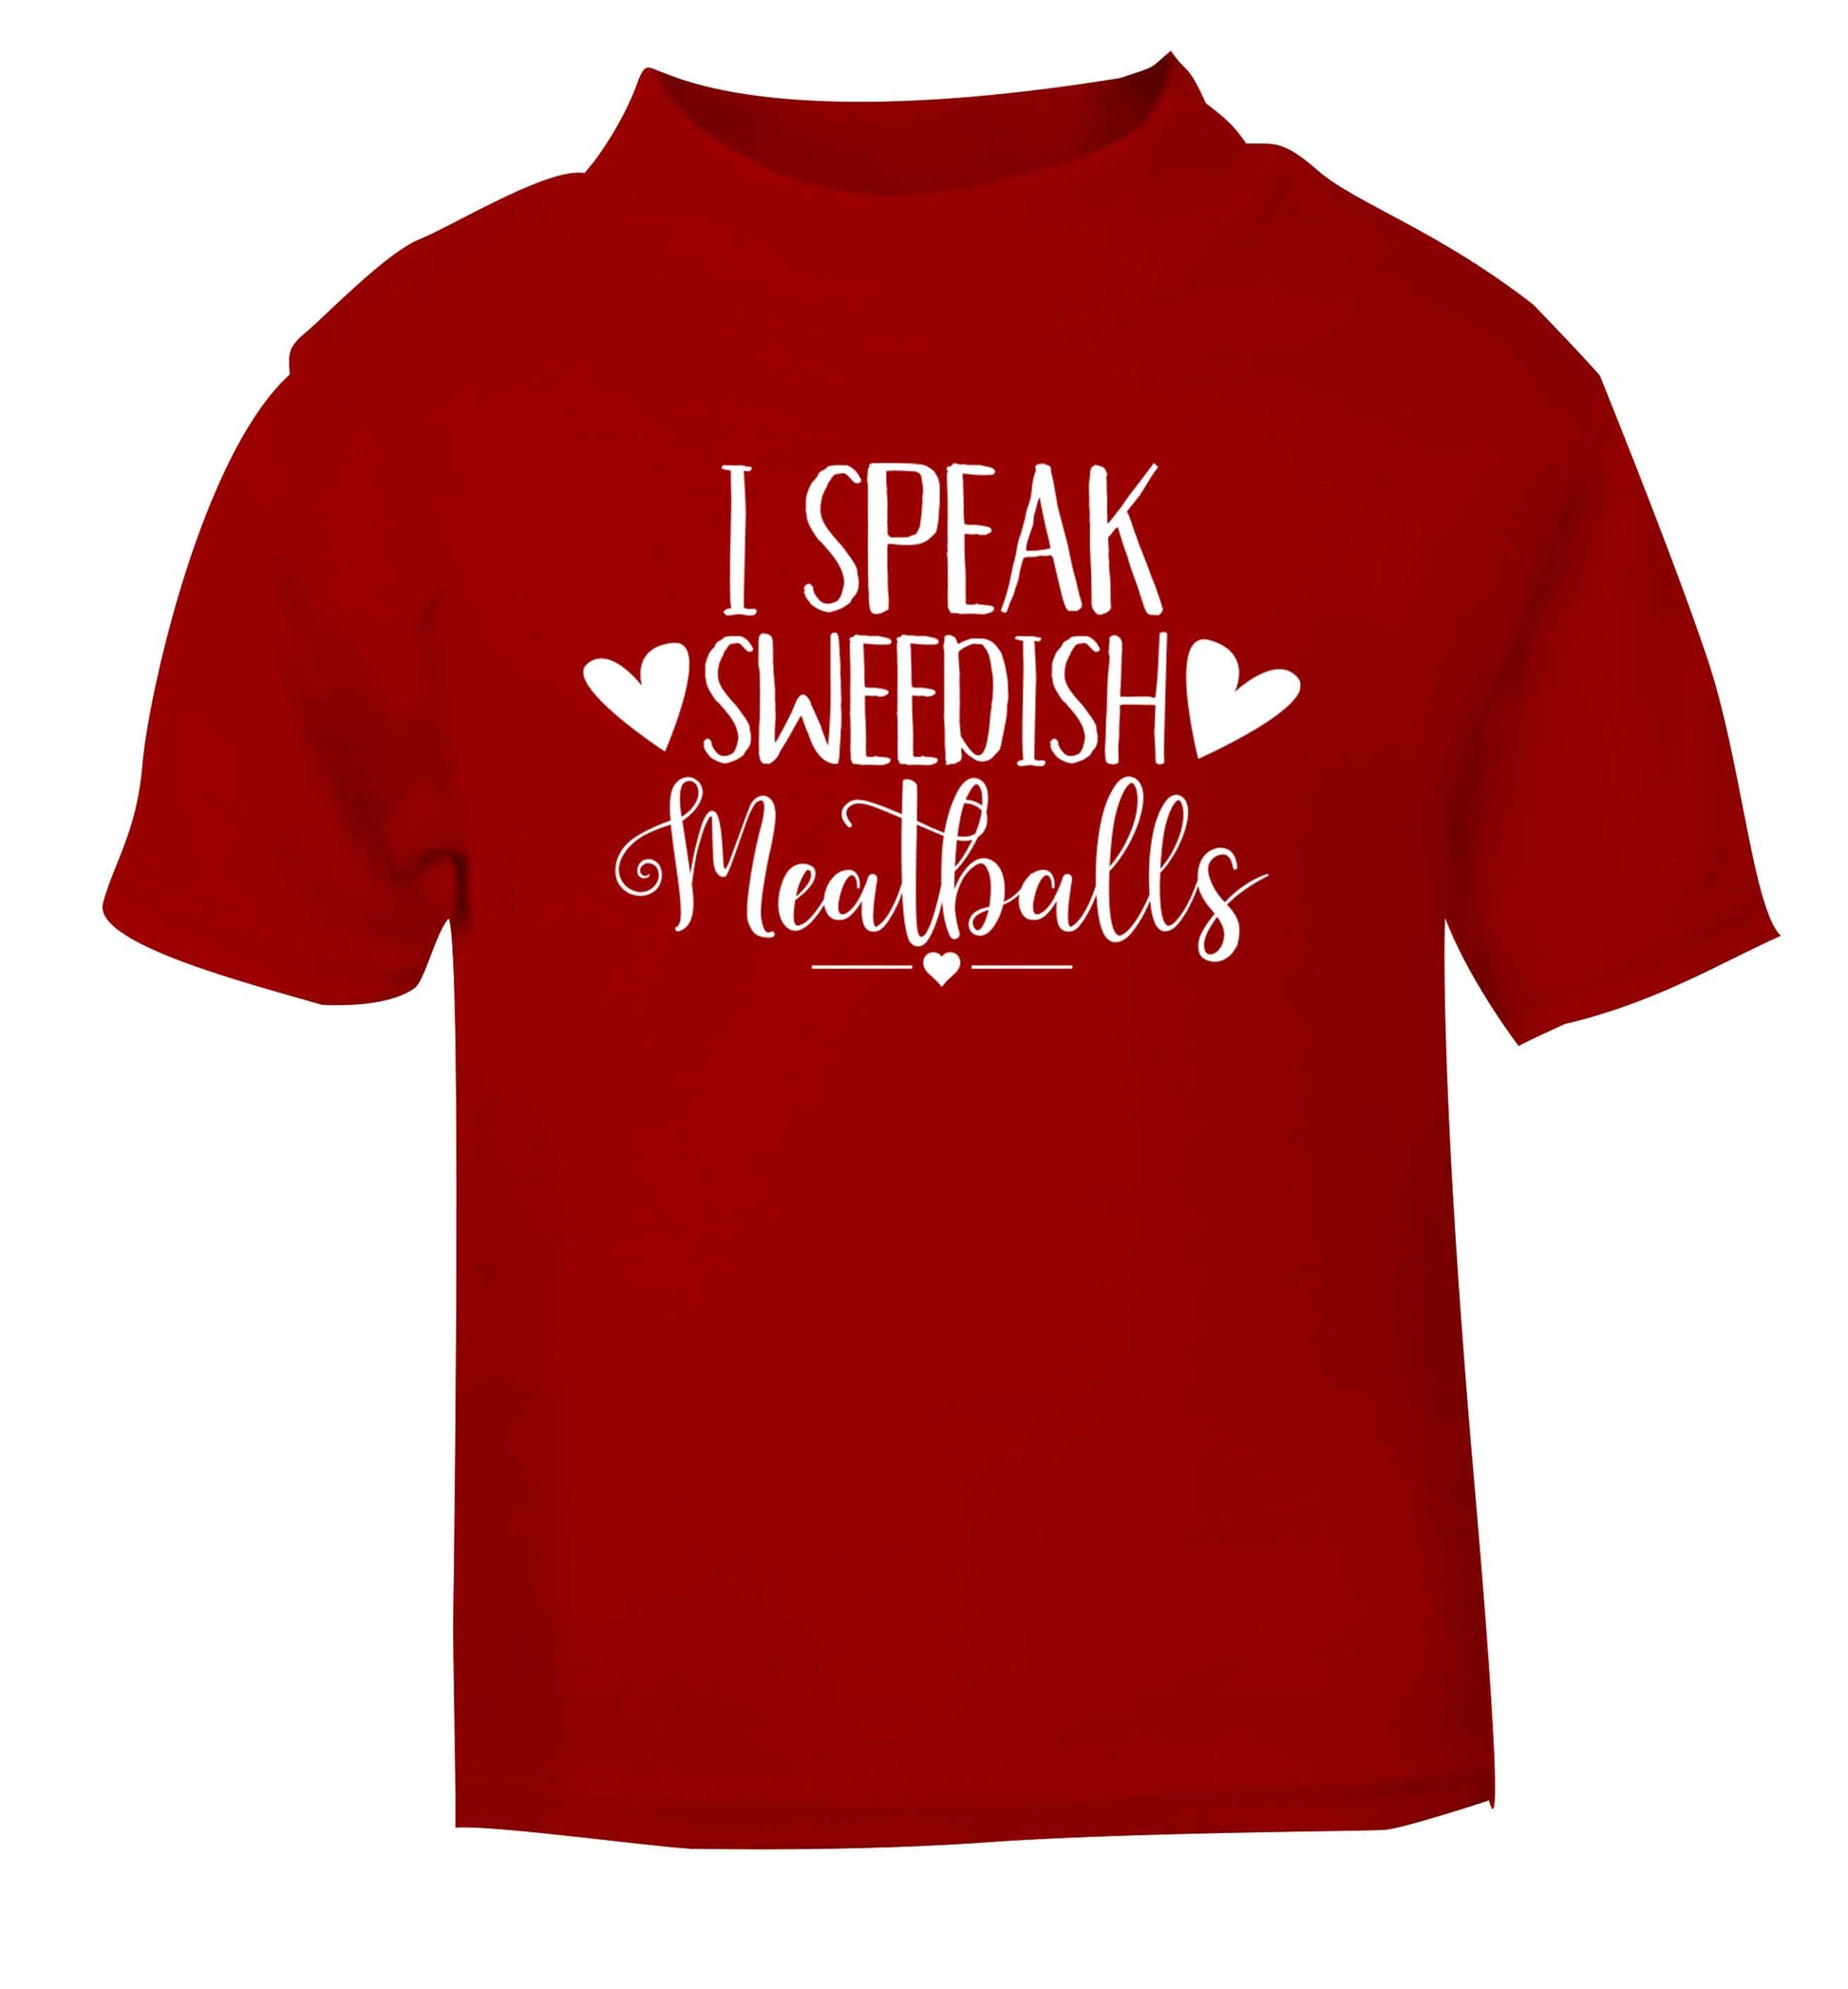 I speak sweedish...meatballs red Baby Toddler Tshirt 2 Years